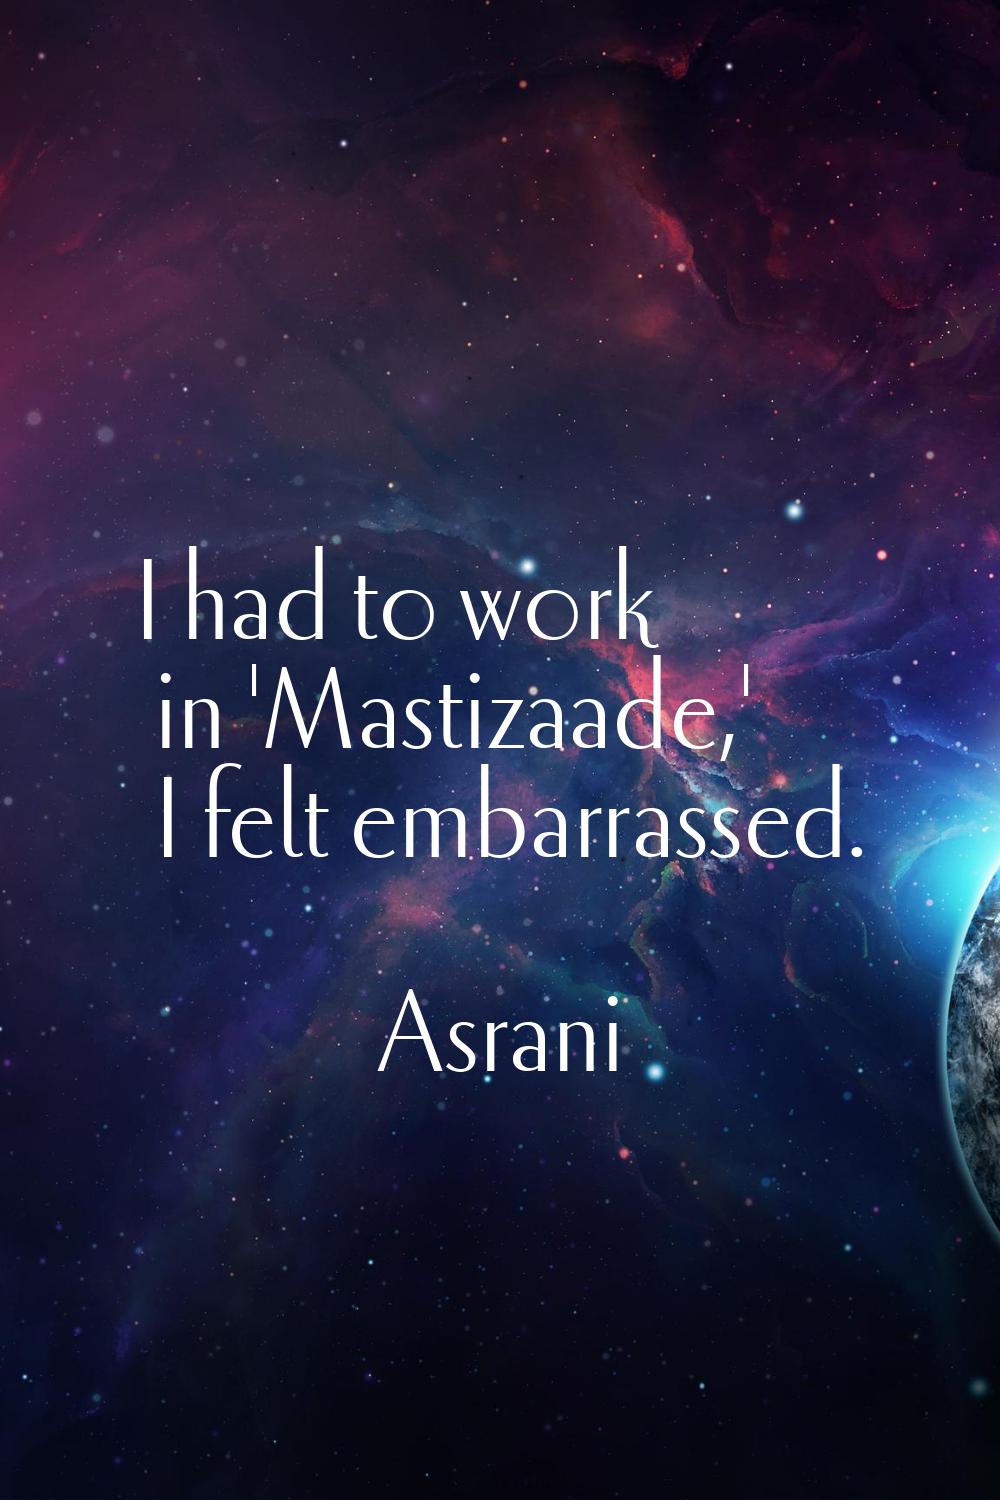 I had to work in 'Mastizaade,' I felt embarrassed.